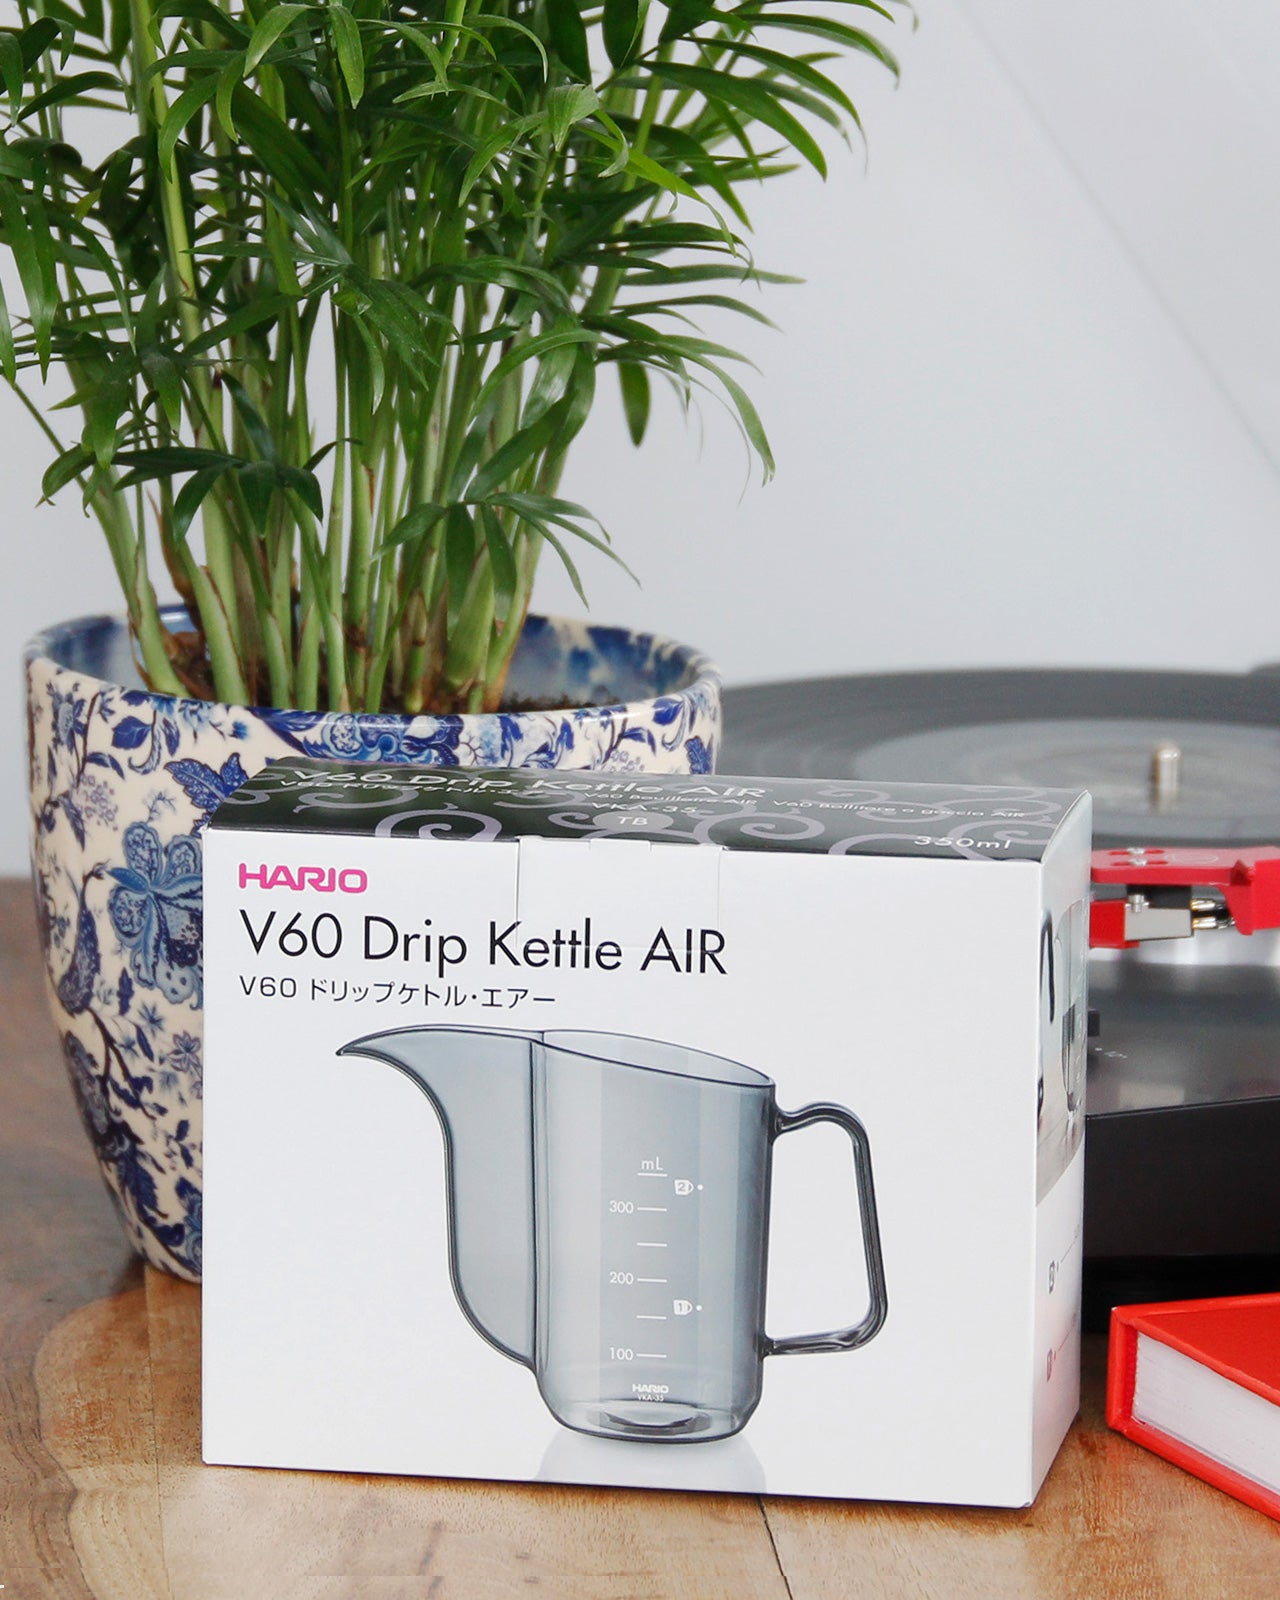 Hario V60 Drip Kettle AIR